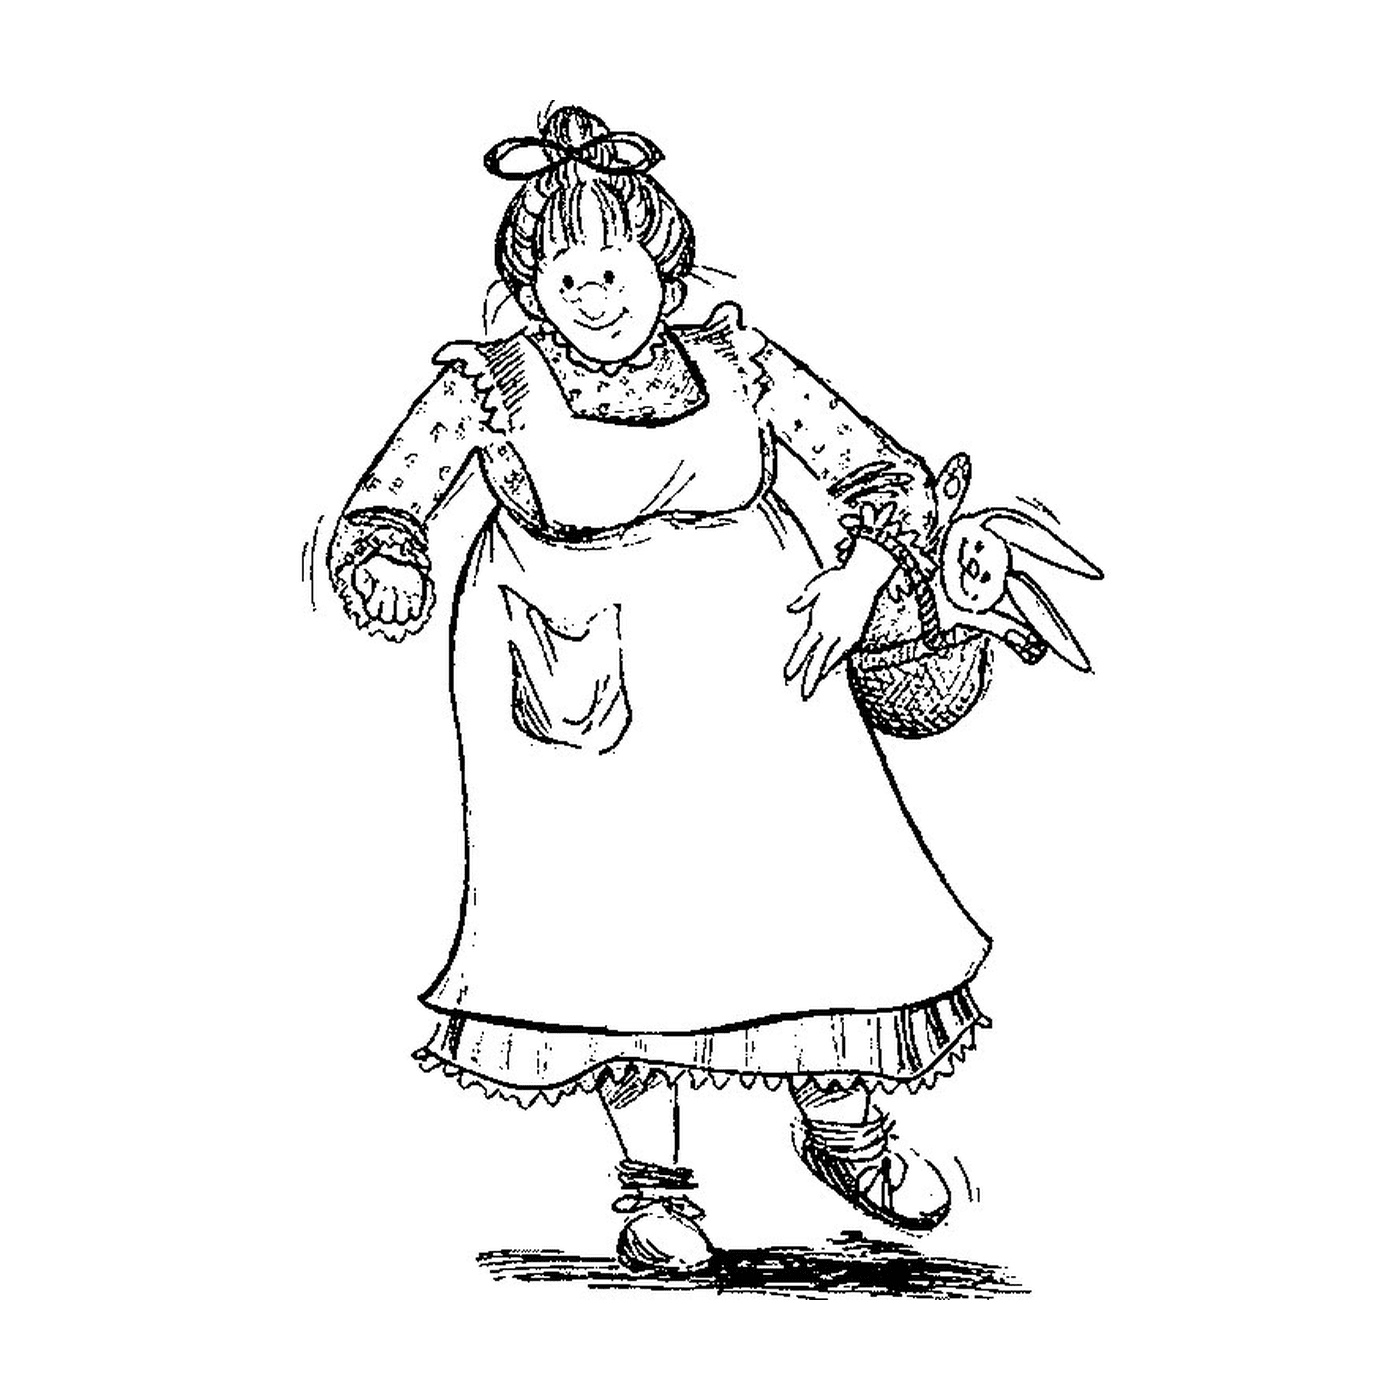  Eine alte Frau, die einen Korb hält 